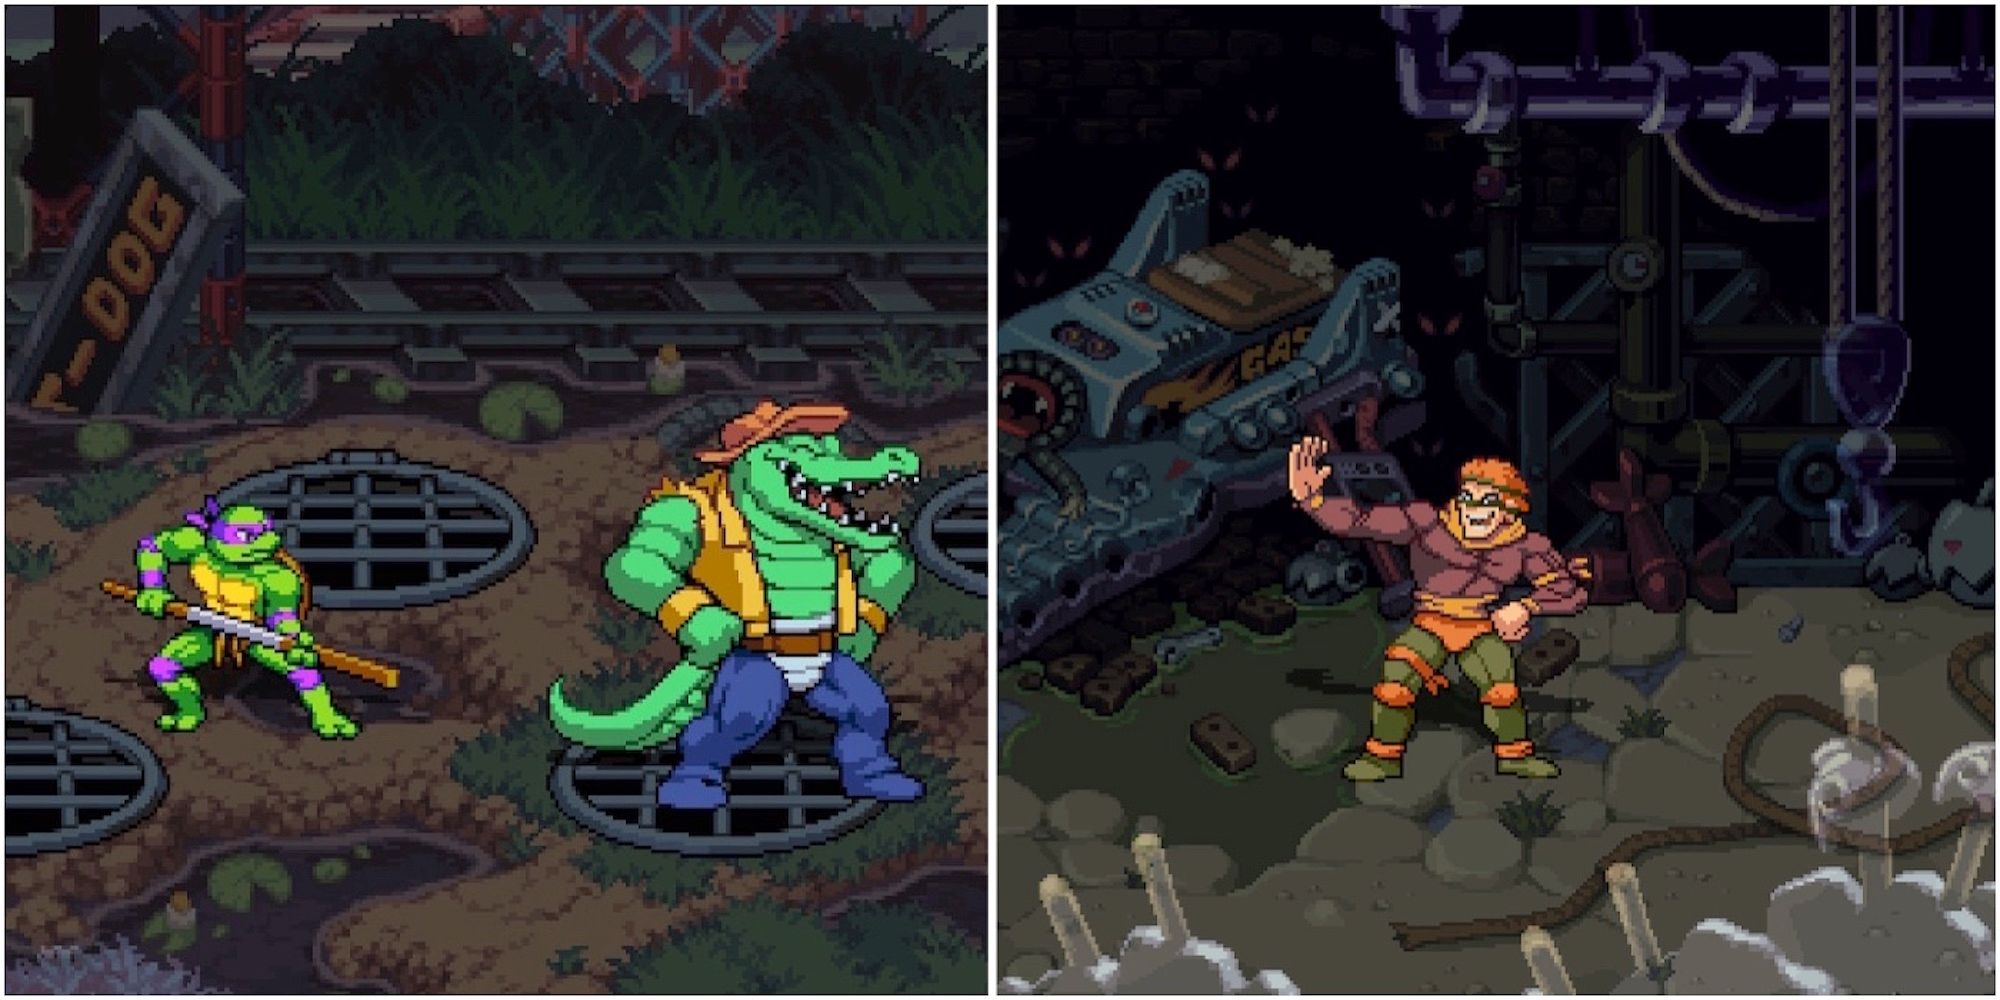 Fighting bosses in Teenage Mutant Ninja Turtles Shredder's Revenge